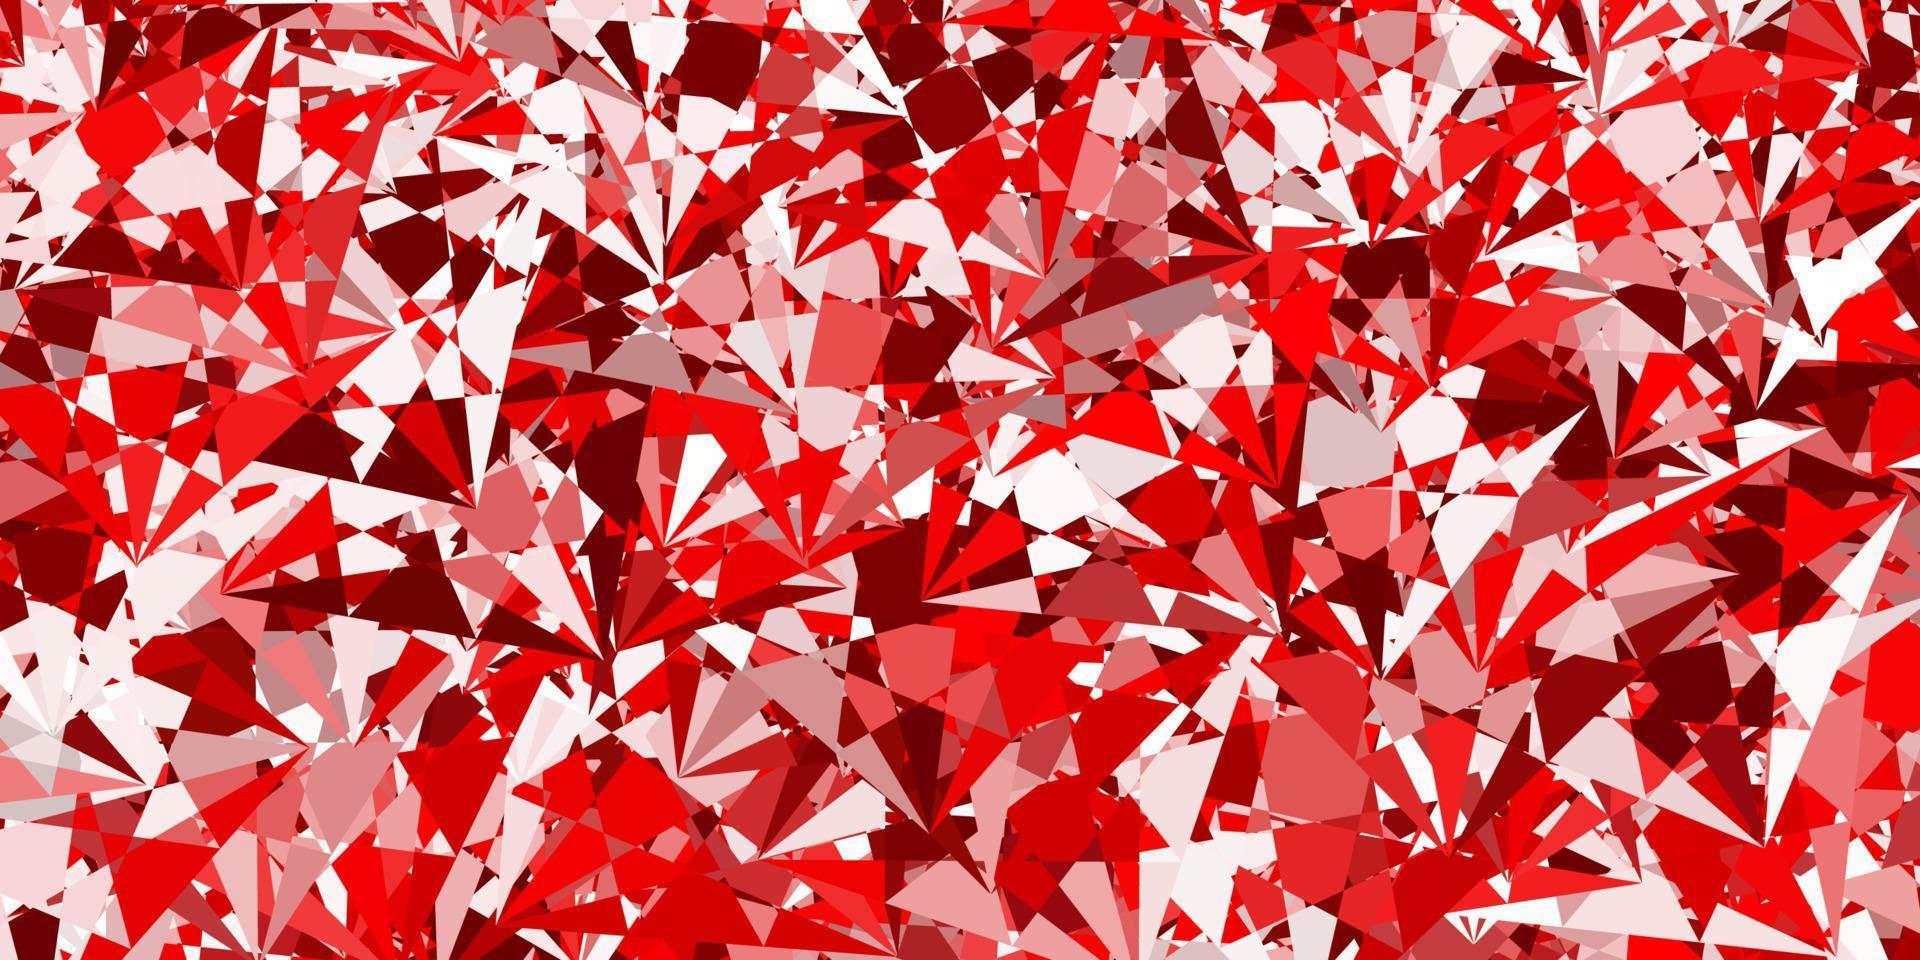 toile de fond de vecteur rouge clair avec des triangles, des lignes.